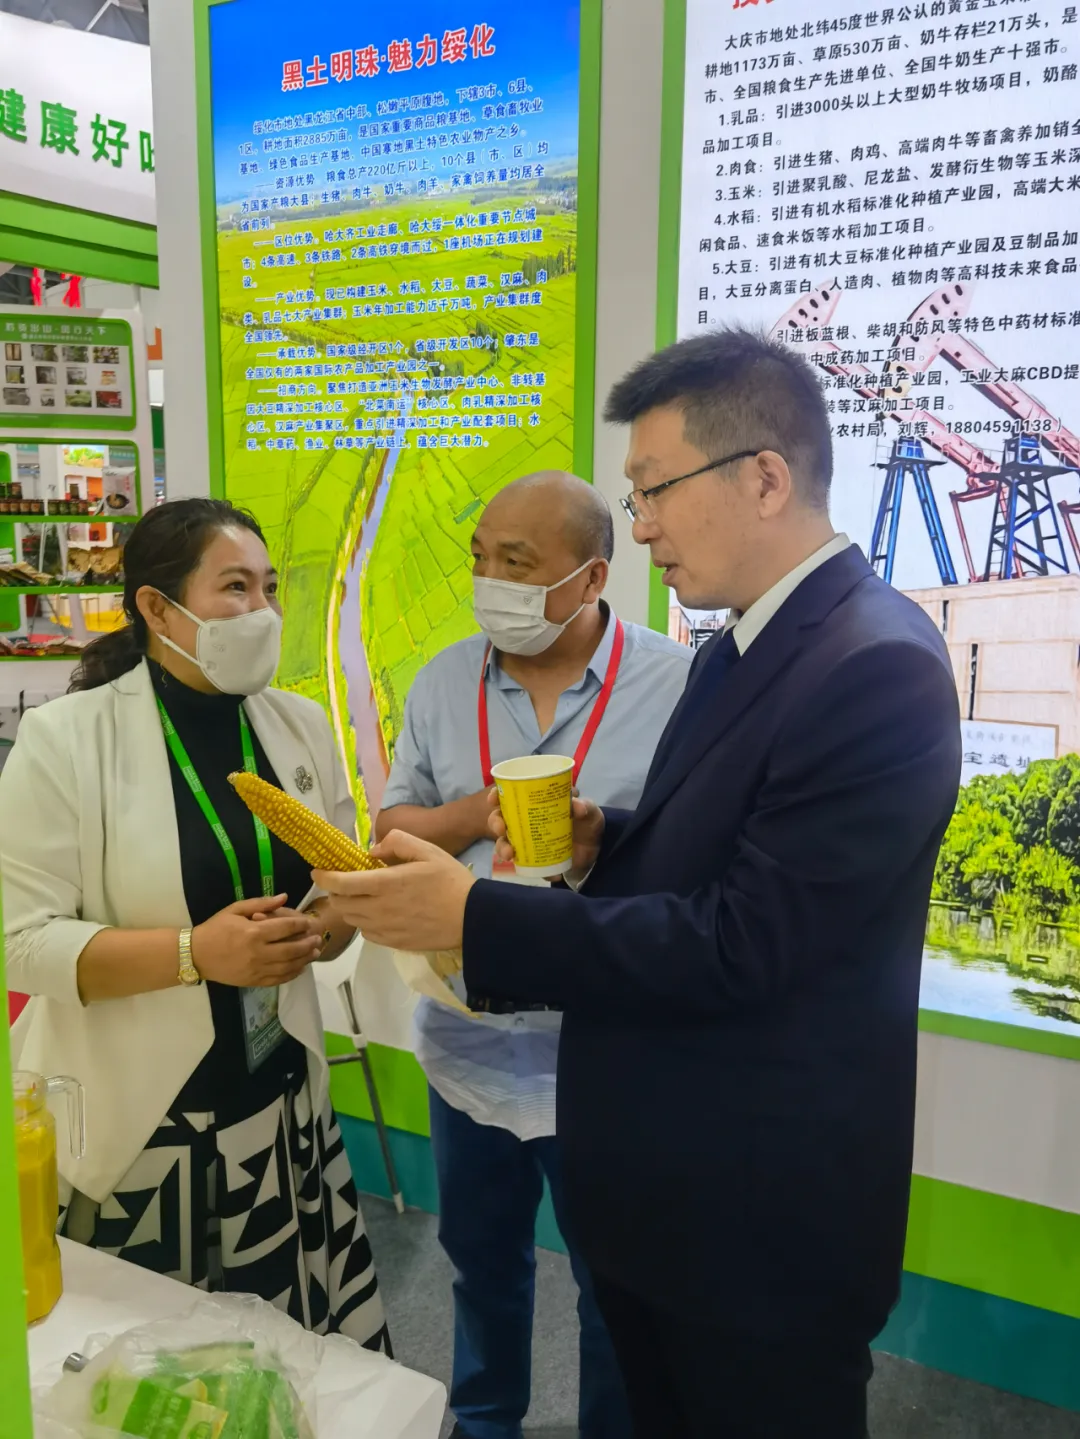 小園玉米榮獲2021中國安徽名優農產品暨農業產業交易會金獎